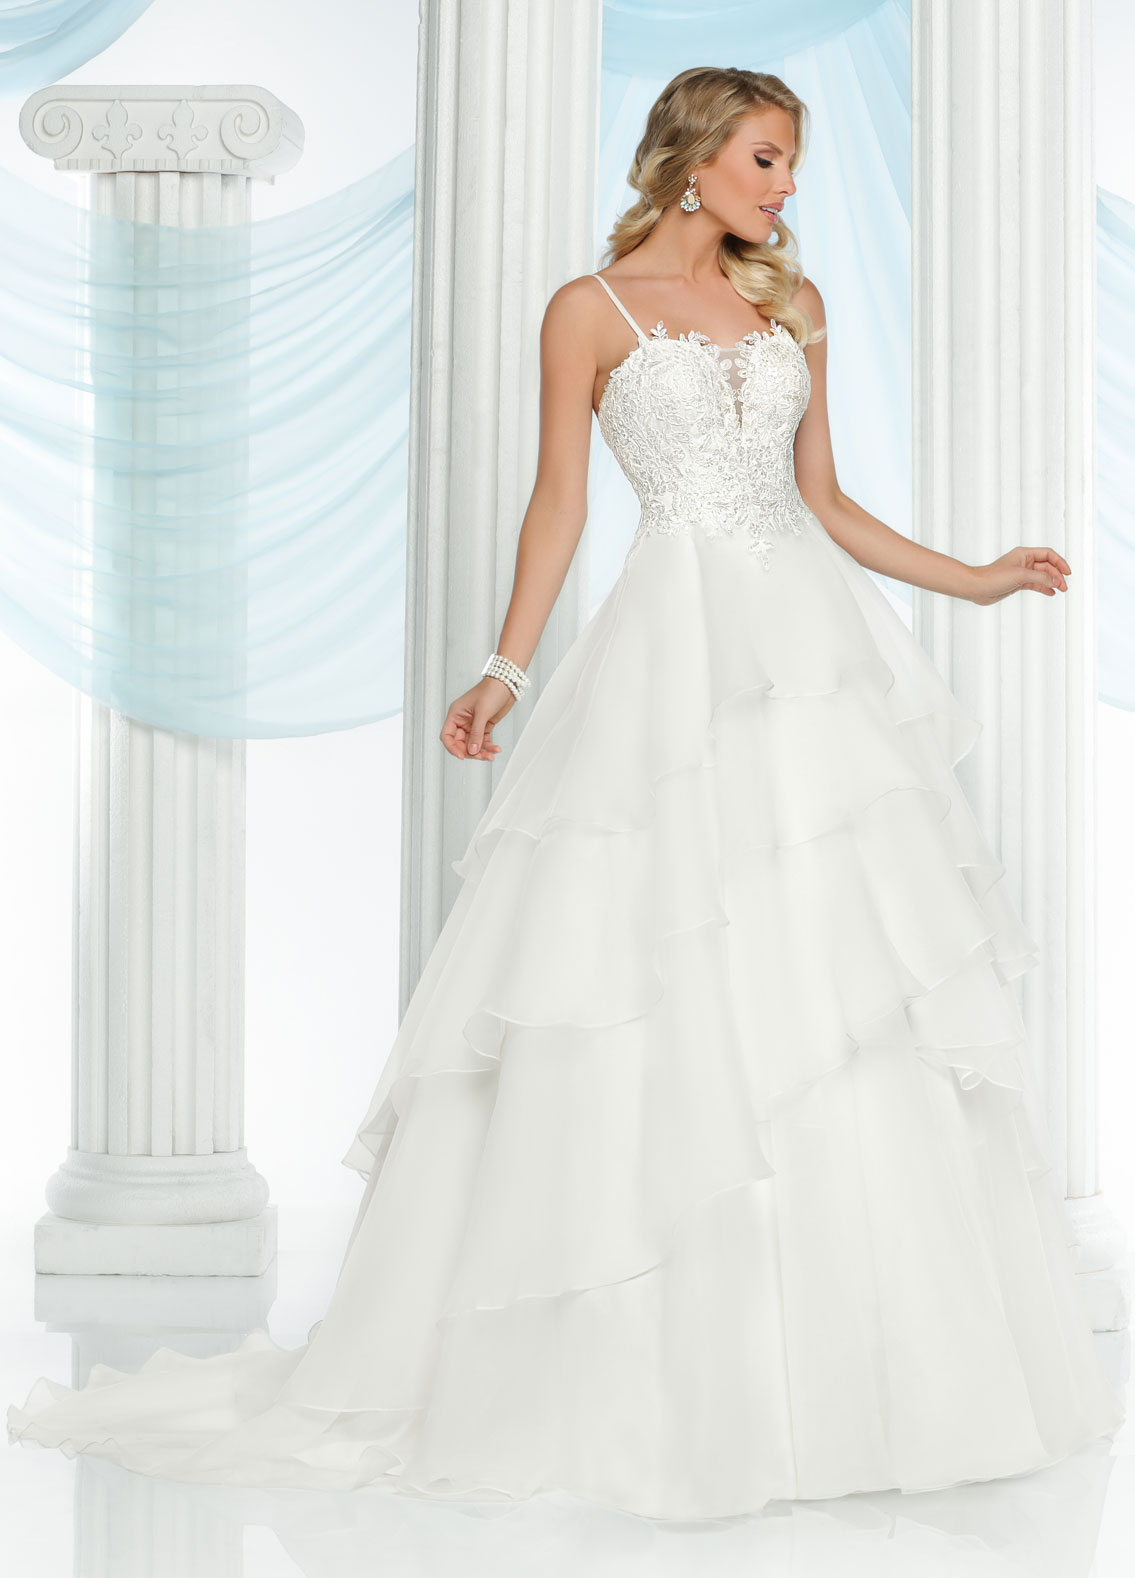 Ruffled Wedding Dresses Style #50411